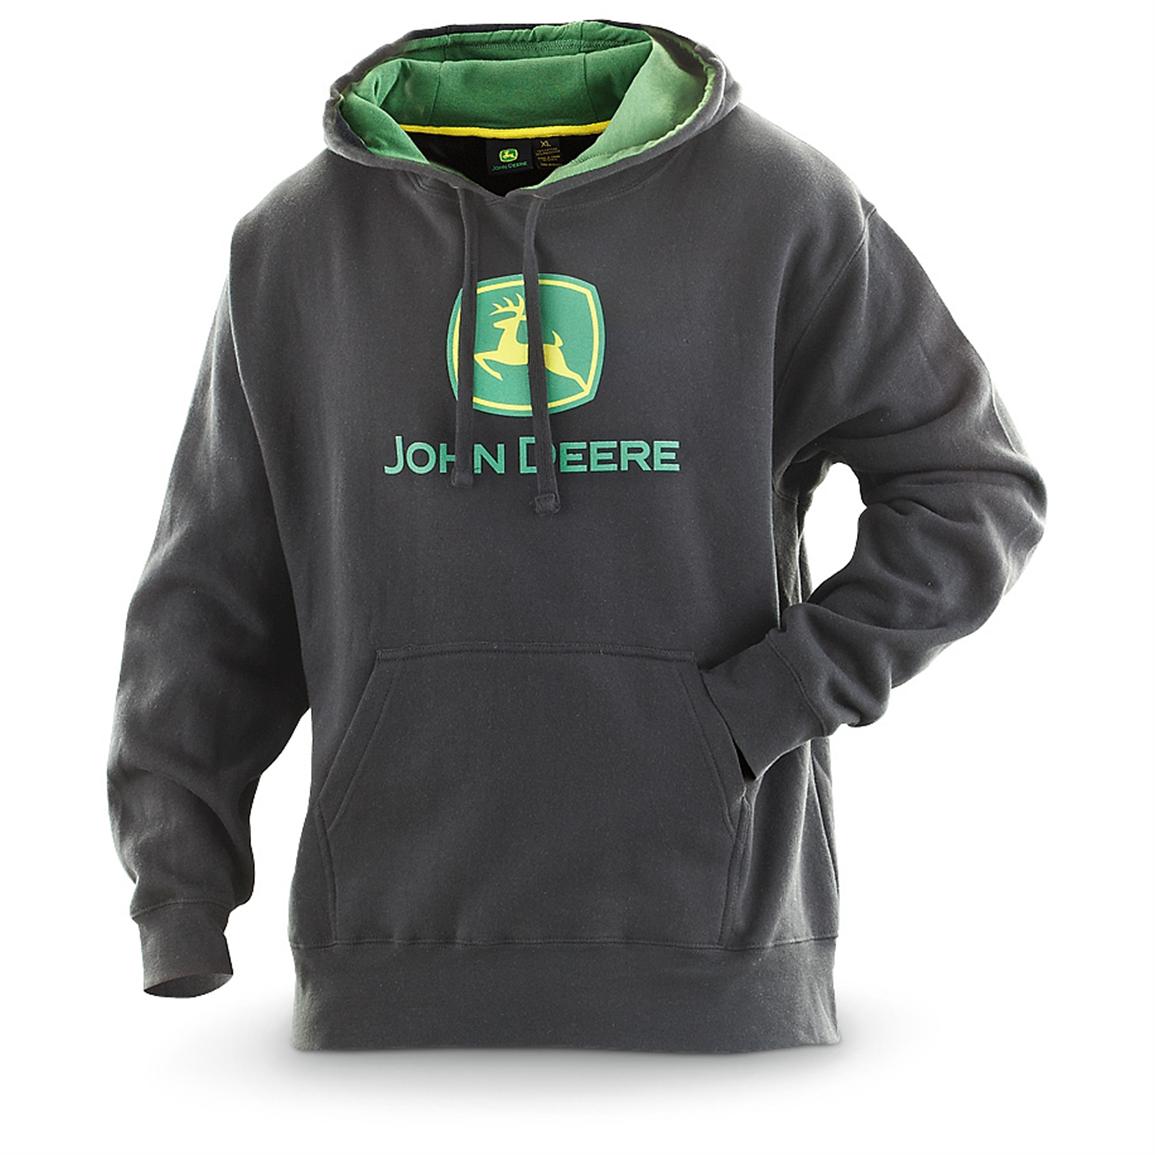 John Deere Pullover Hooded Sweatshirt - 228216, Sweatshirts & Hoodies ...